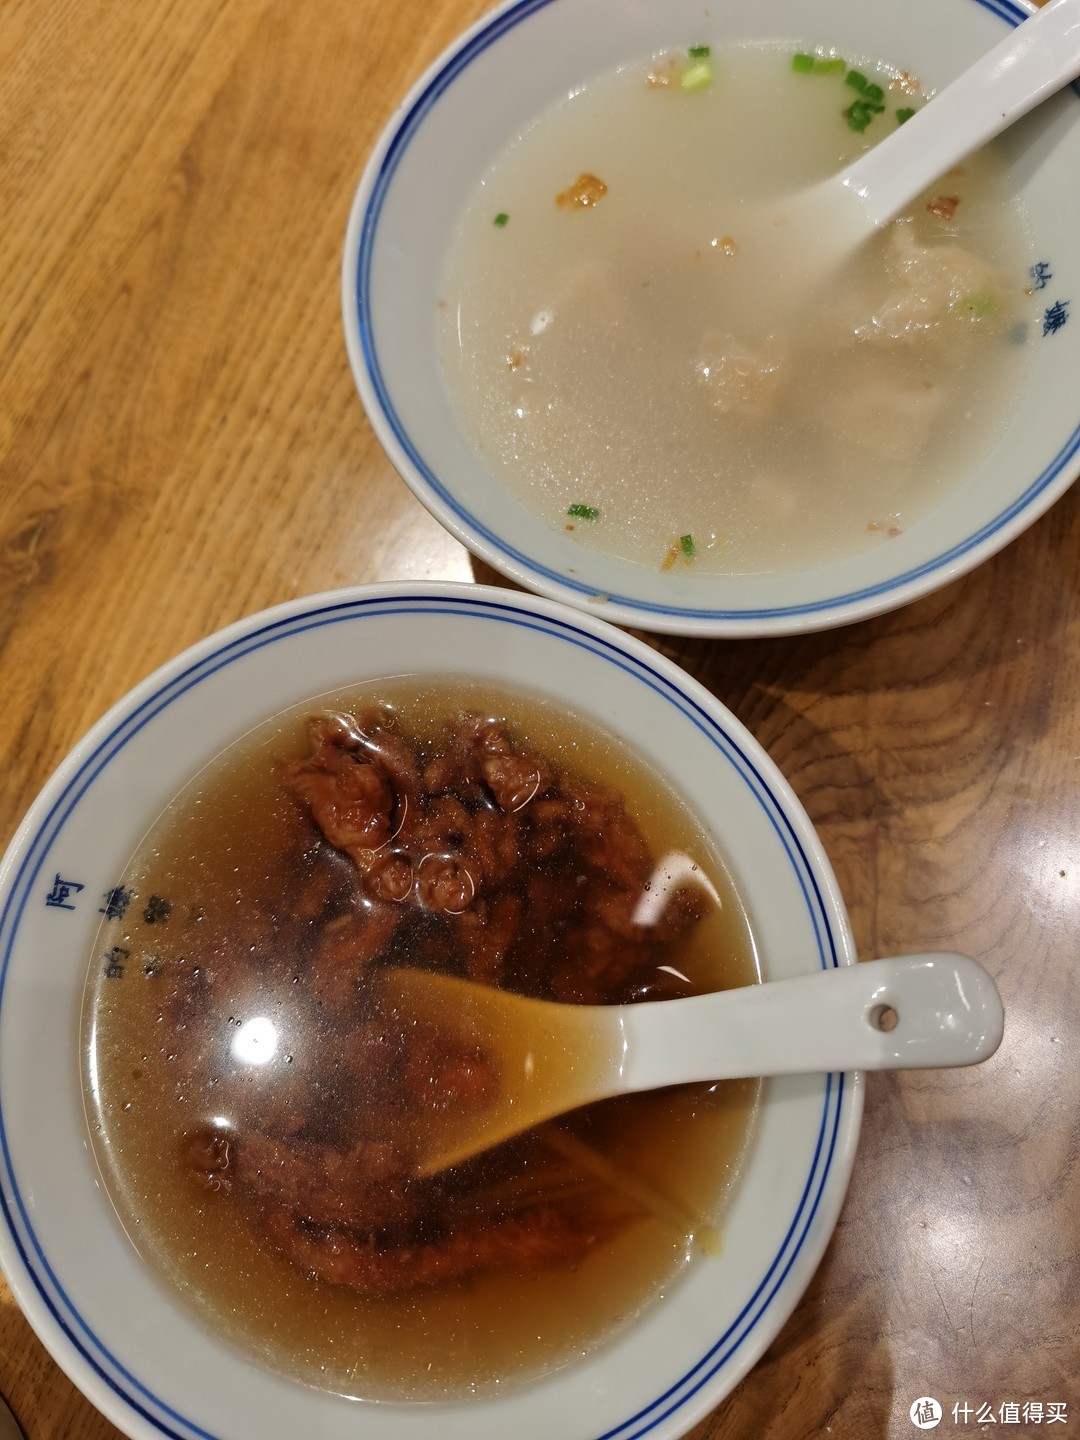 肉燕汤和牛肉羹。候阿婆的肉燕汤还是惊艳到我了。汤鲜肉燕里的肉吃着很香，比后几日吃过的肉燕汤都要好吃（个人主观印象）。